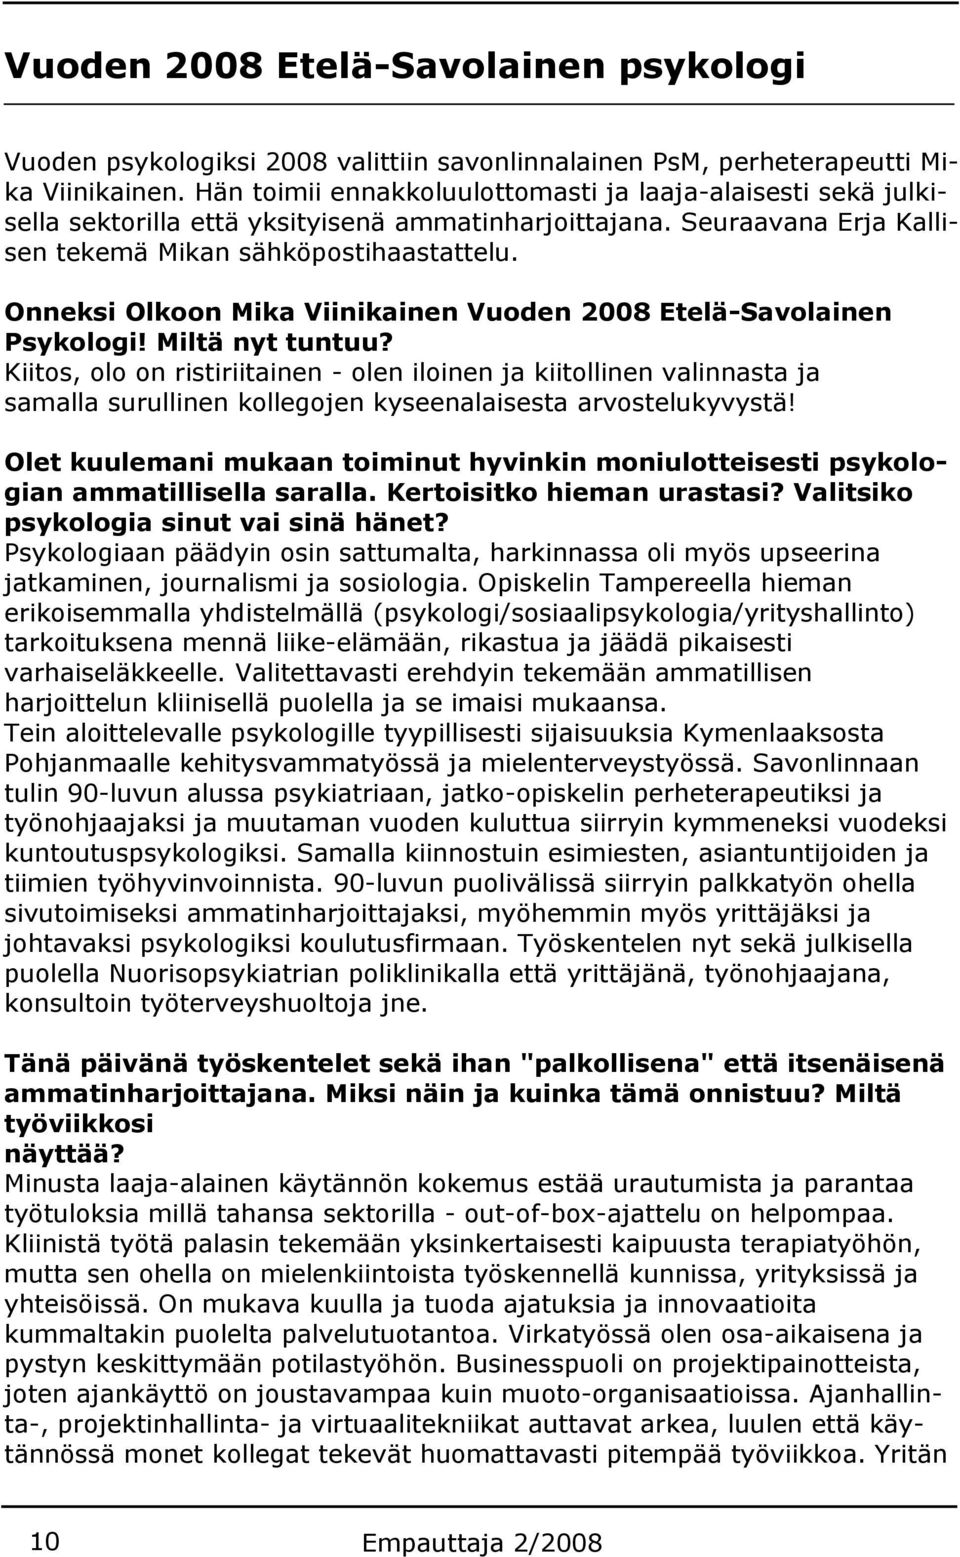 Onneksi Olkoon Mika Viinikainen Vuoden 2008 Etelä-Savolainen Psykologi! Miltä nyt tuntuu?